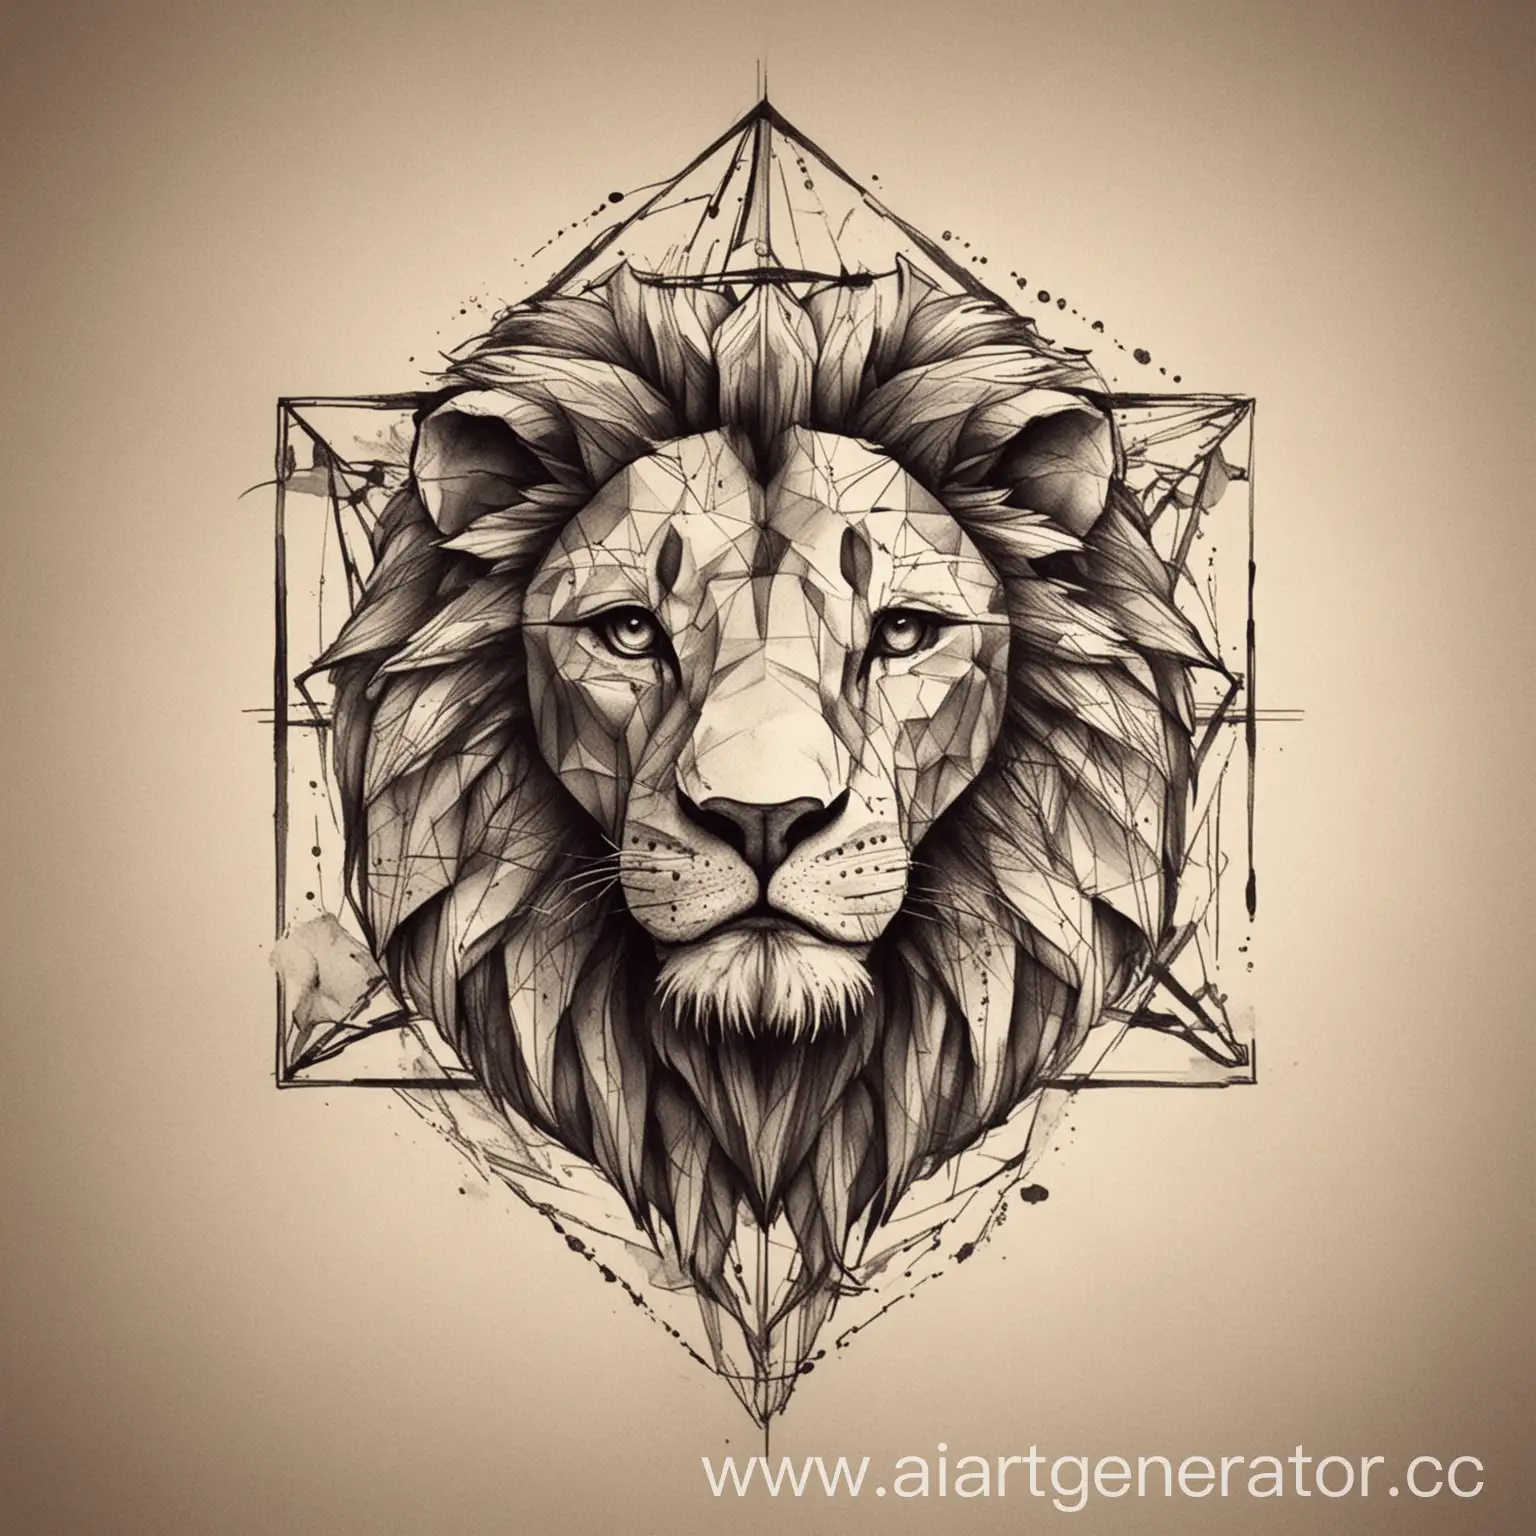 Эскиз для татуировки, лев в стиле минимализма, с использованием геометрических элементов